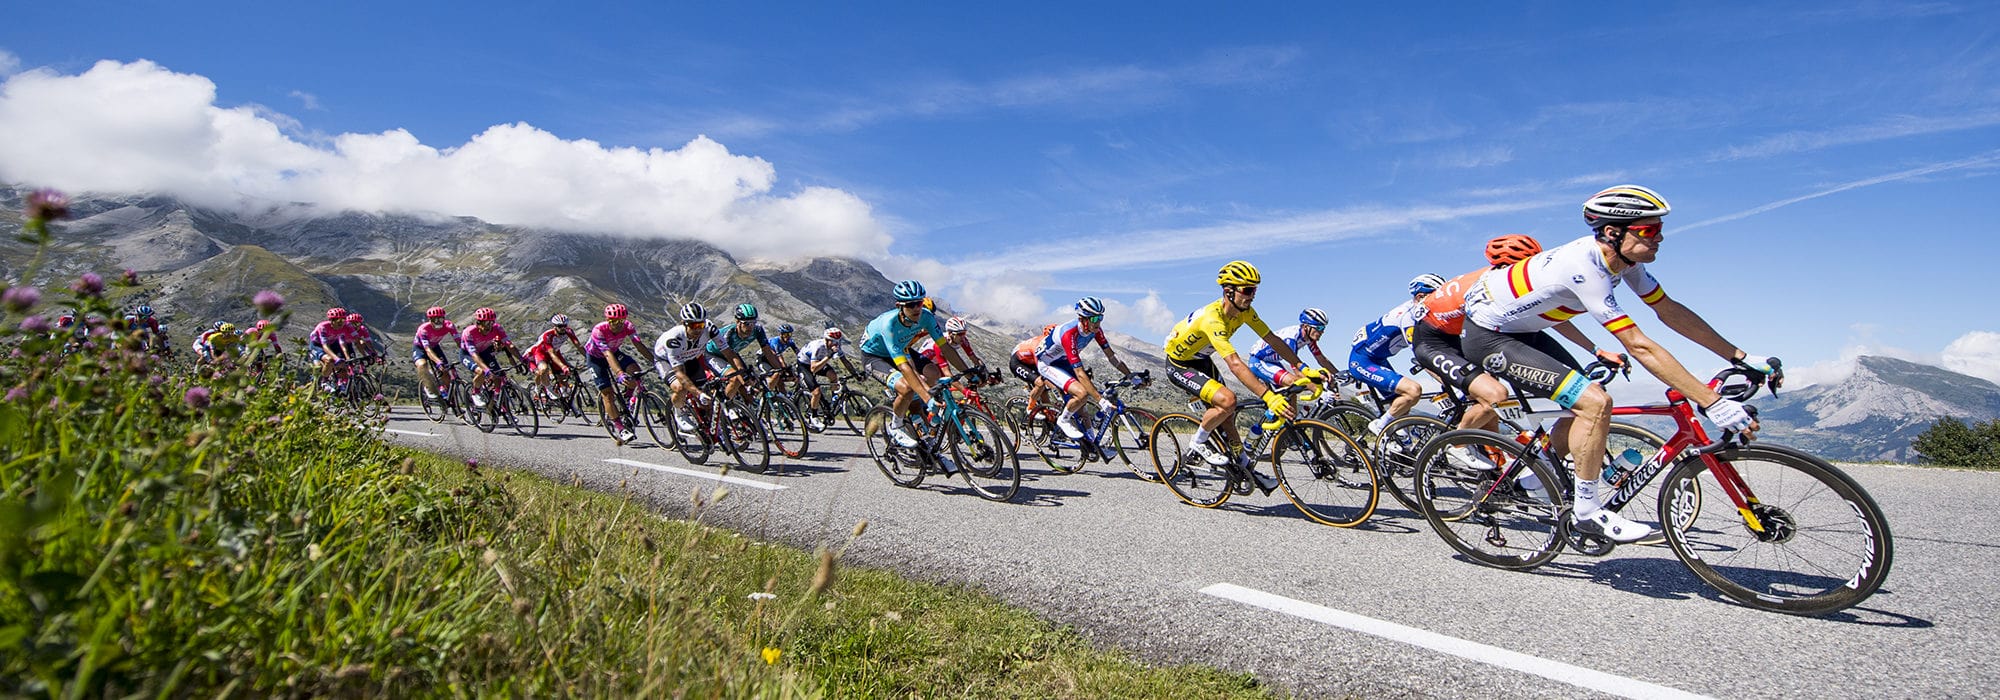 La prima settimana del Tour e le strade del Sud della Francia: dalle Alpi ai Pirenei Atlantici.